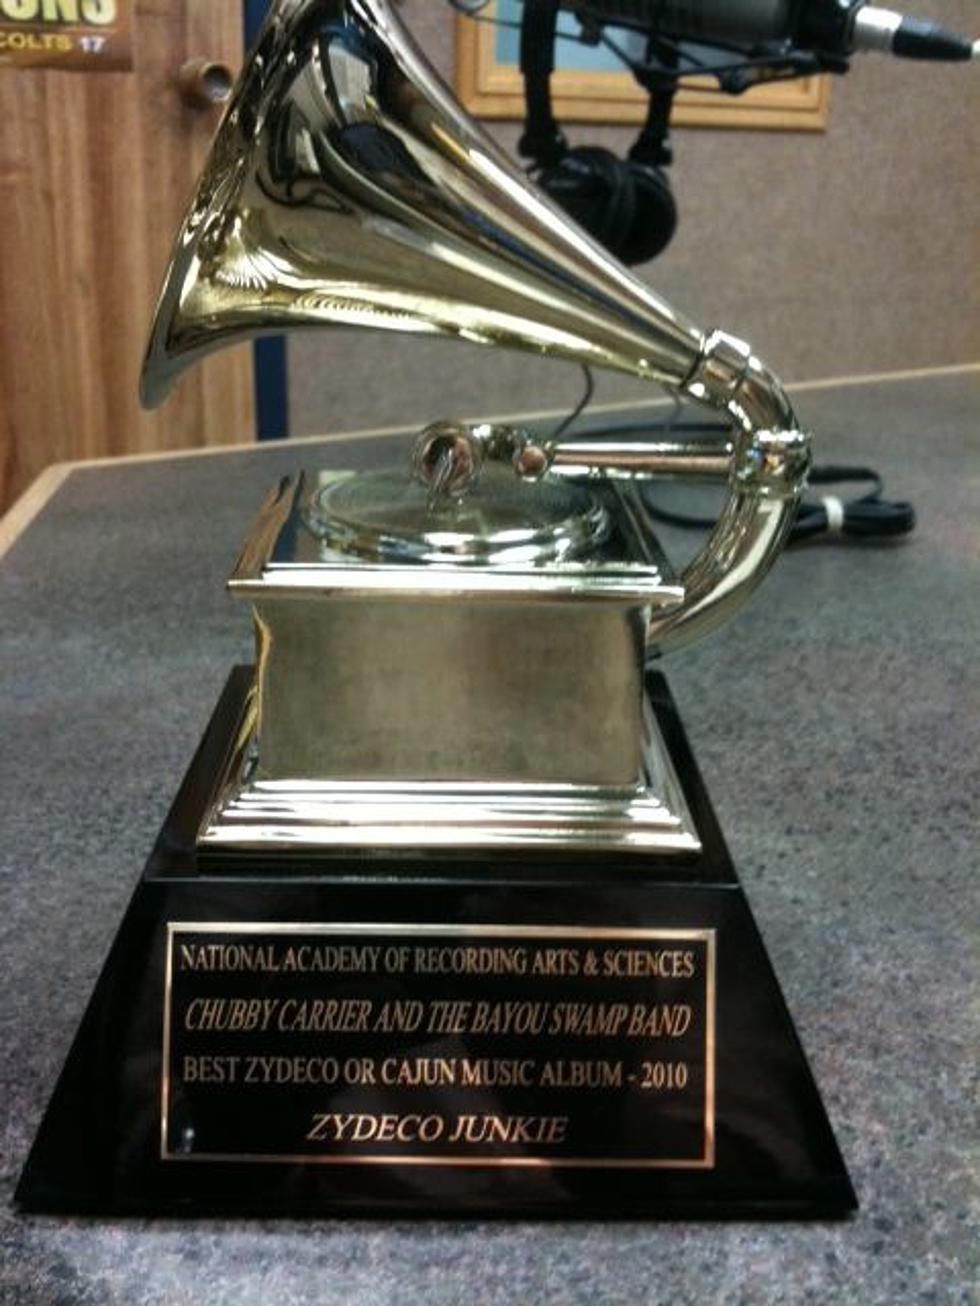 Chubby Carrier’s Grammy Award